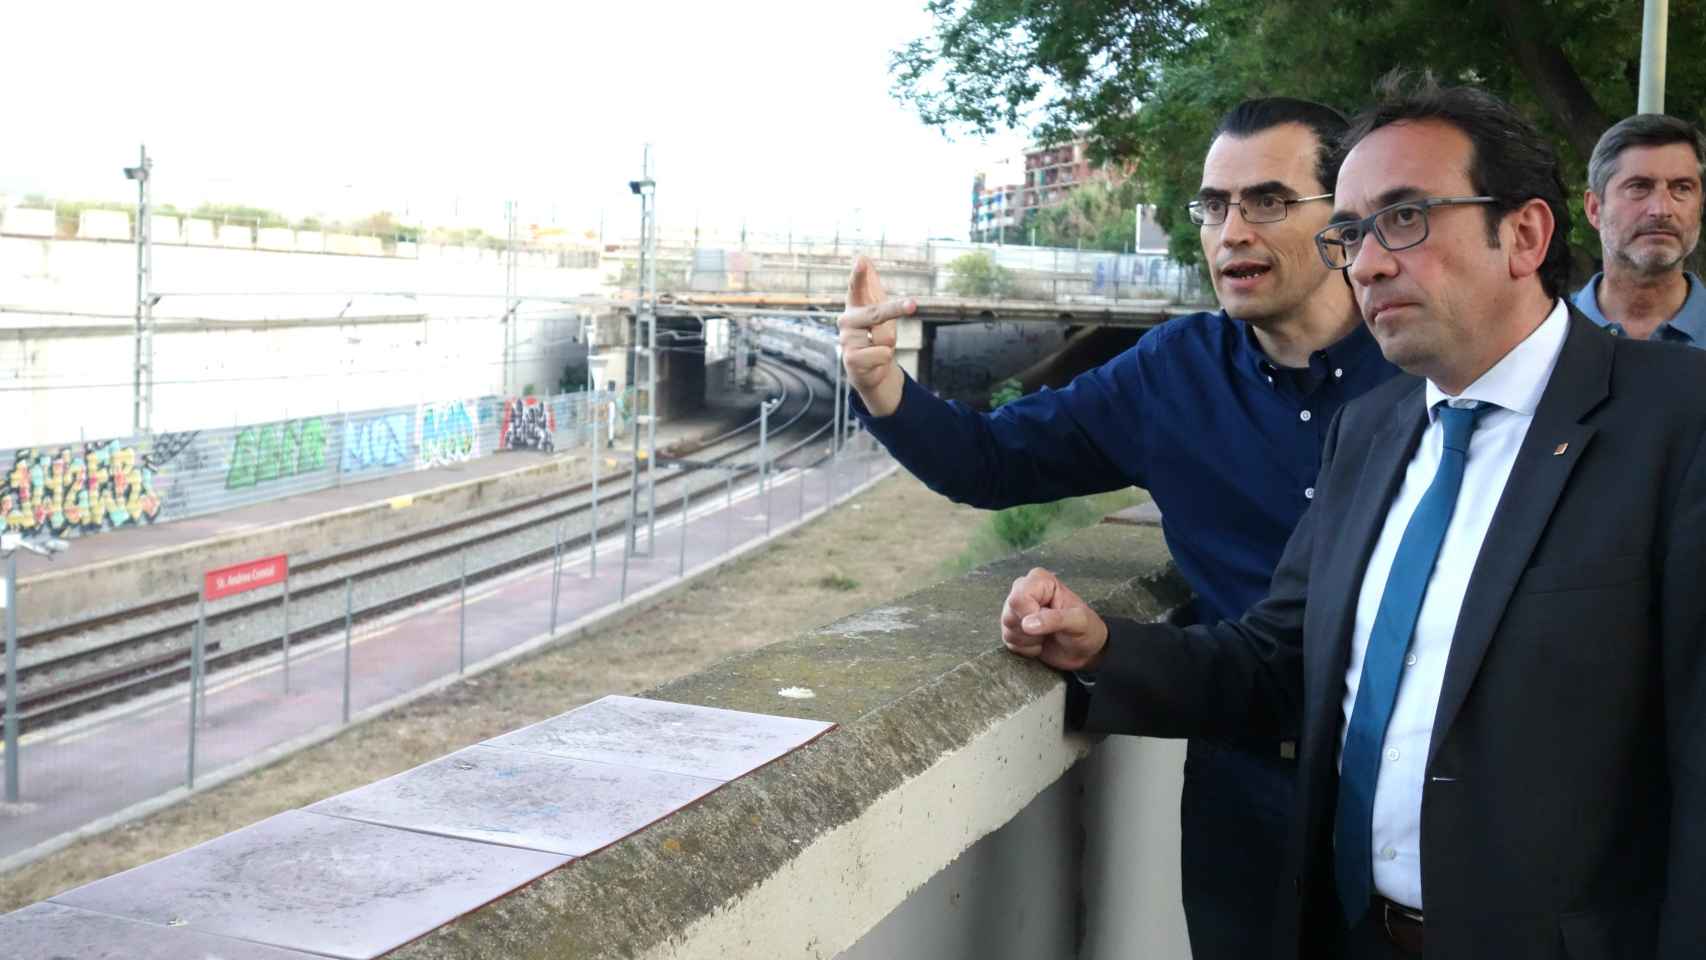 Pau Maduell de la AVV de Sant Andreu de Palomar le explica al conseller Josep Rull el estado de las obras  DGM